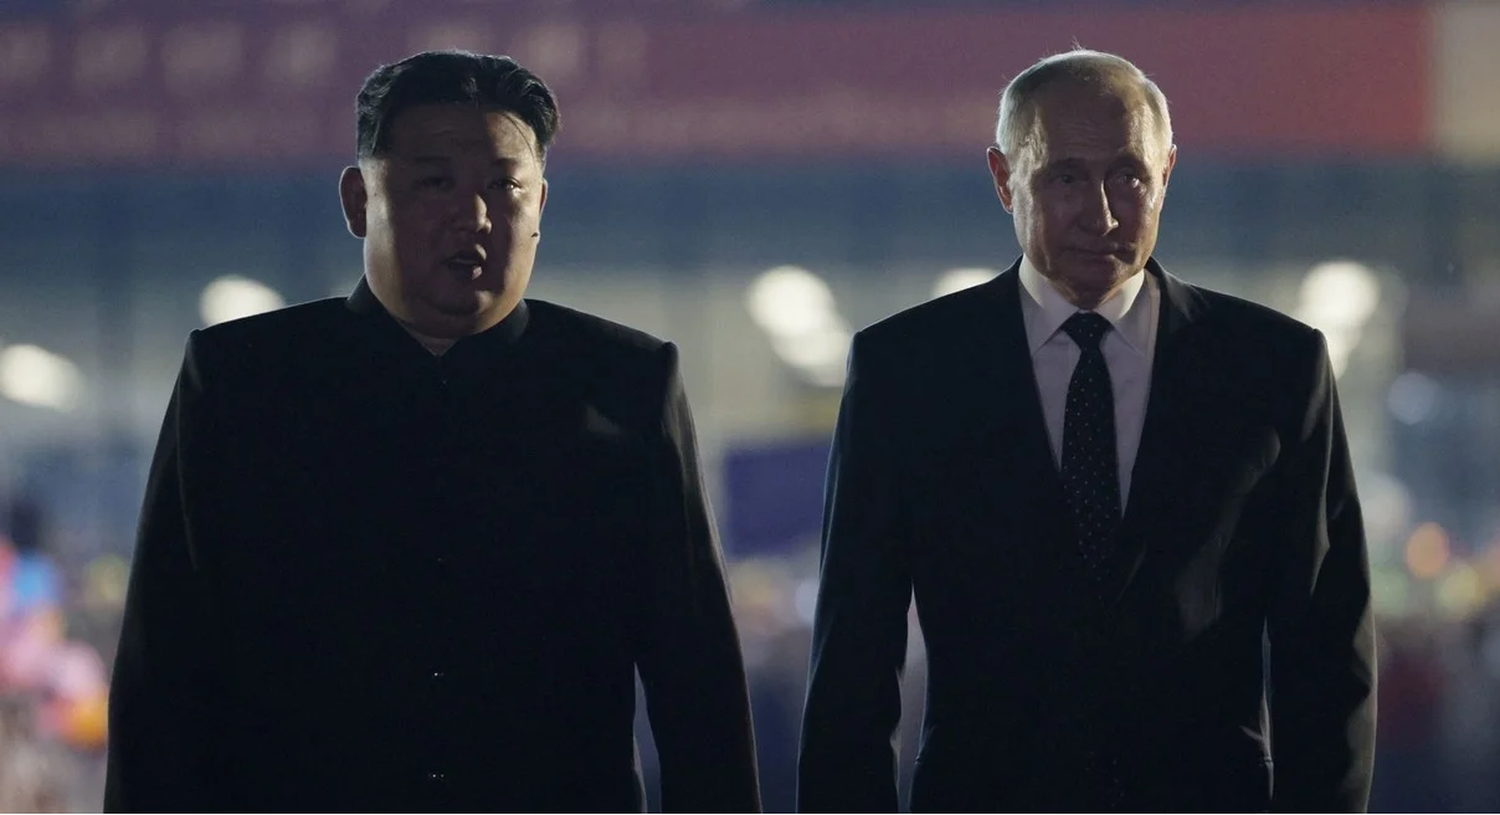 Qué significa el acuerdo de asociación estratégica entre Vladimir Putin y Kim Jong-un